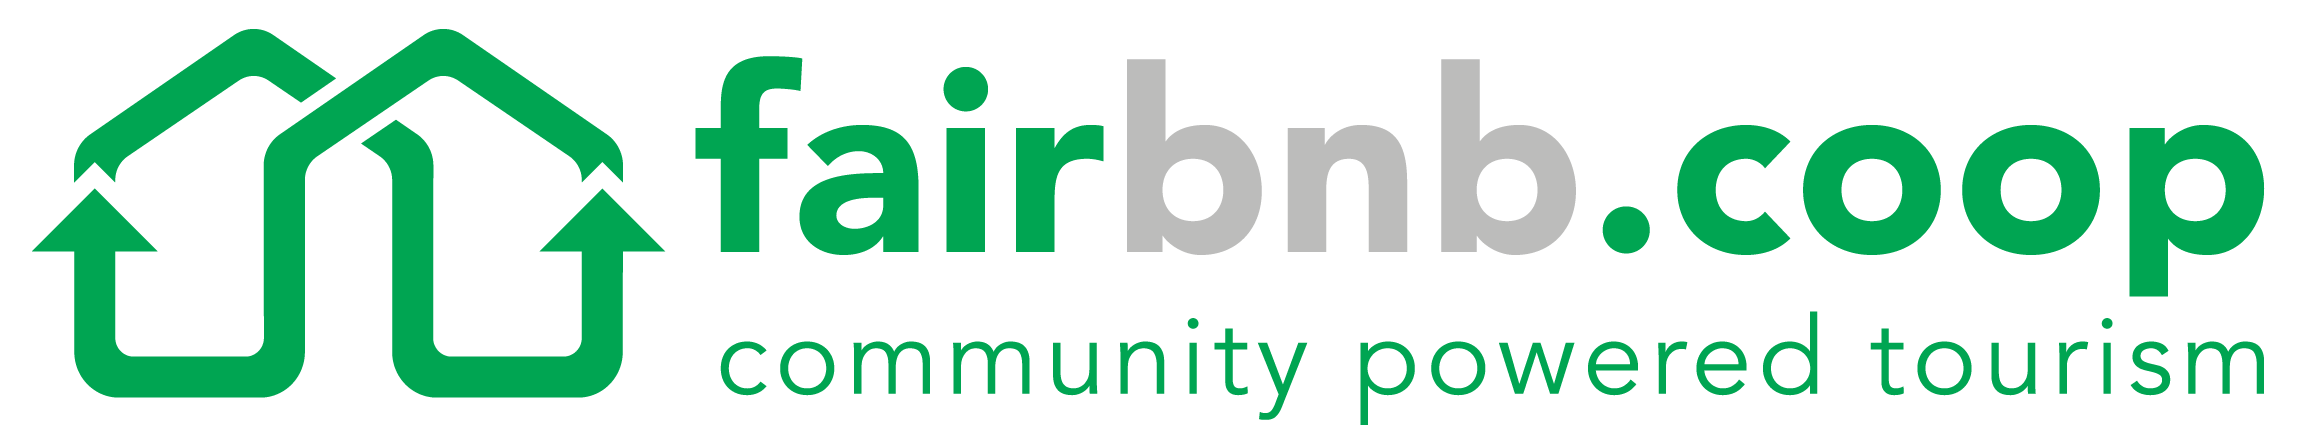 FairBnb.coop logo